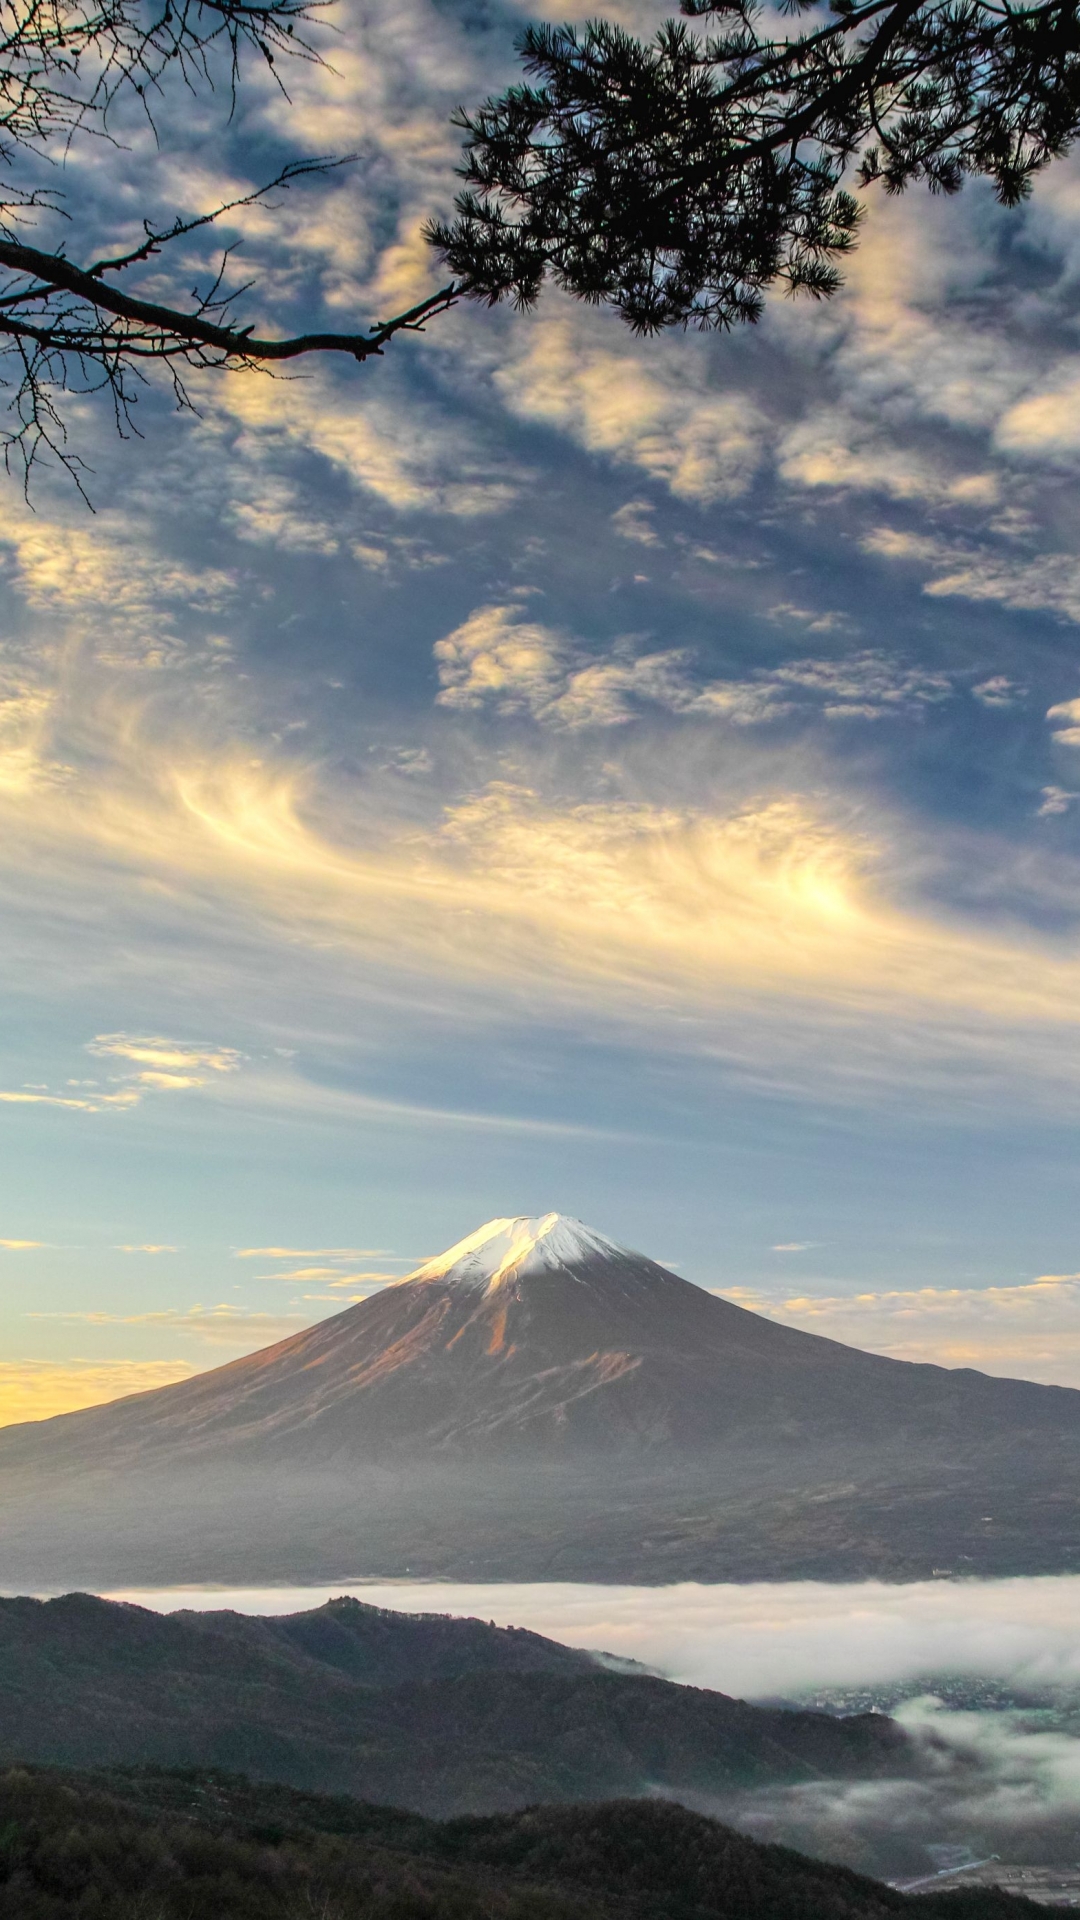 Скачать картинку Небо, Облака, Япония, Облако, Вулкан, Гора Фудзи, Вулканы, Земля/природа в телефон бесплатно.